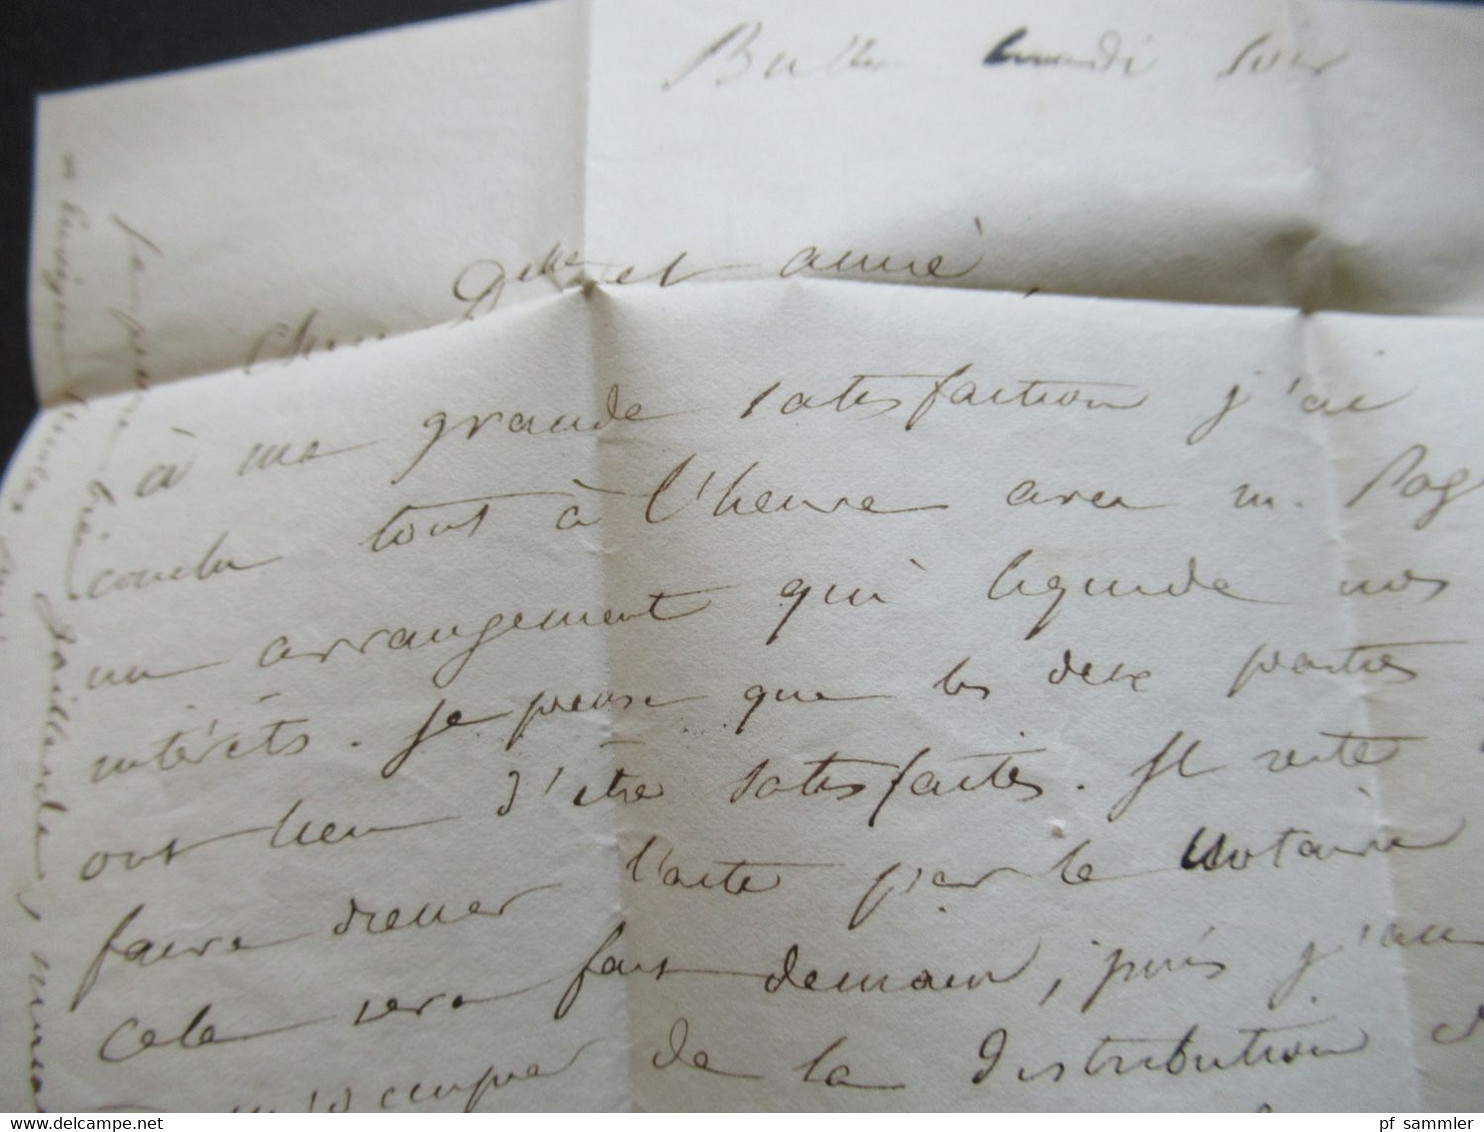 Schweiz 19.10.1854 roter Stempel Suisse Brief ins Elsass Strasbourg Briefpapier Ministere des Travaux publics Mines